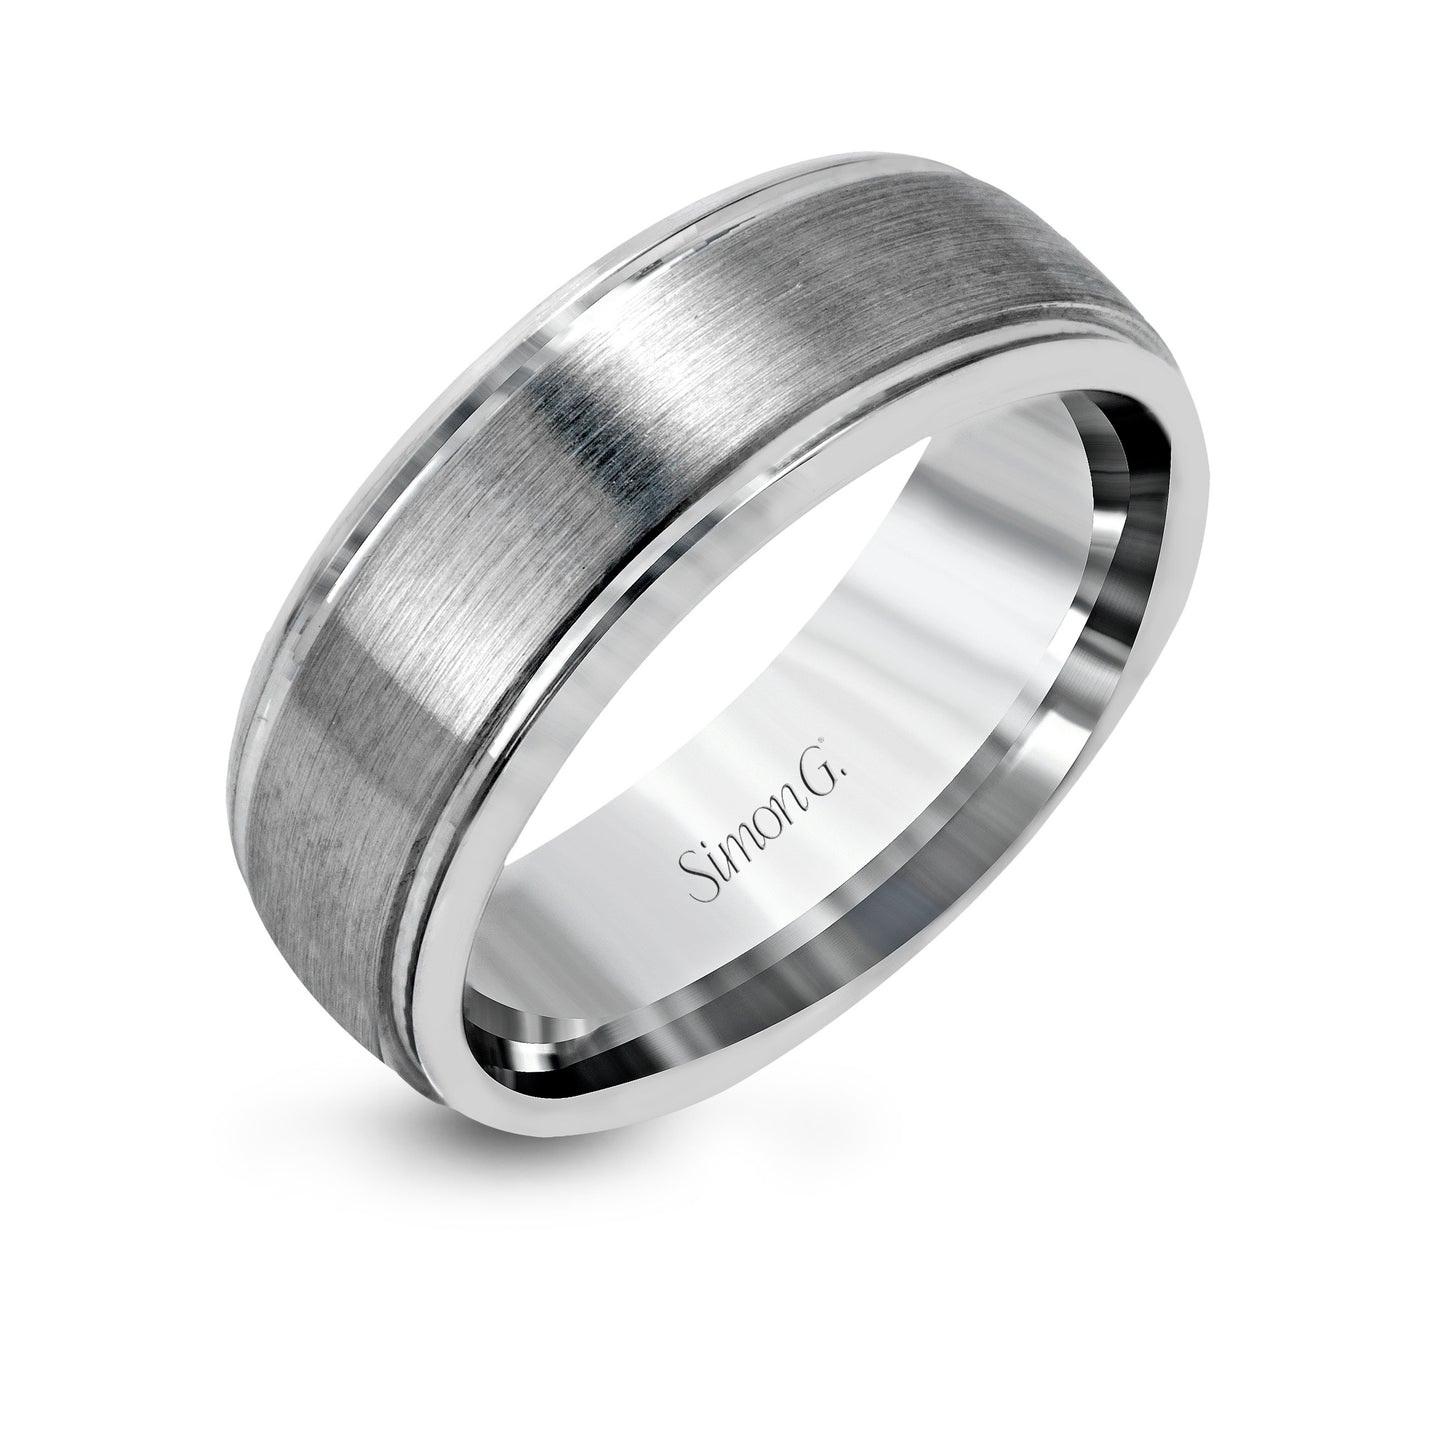 Simon G Men's Ring - #LG155